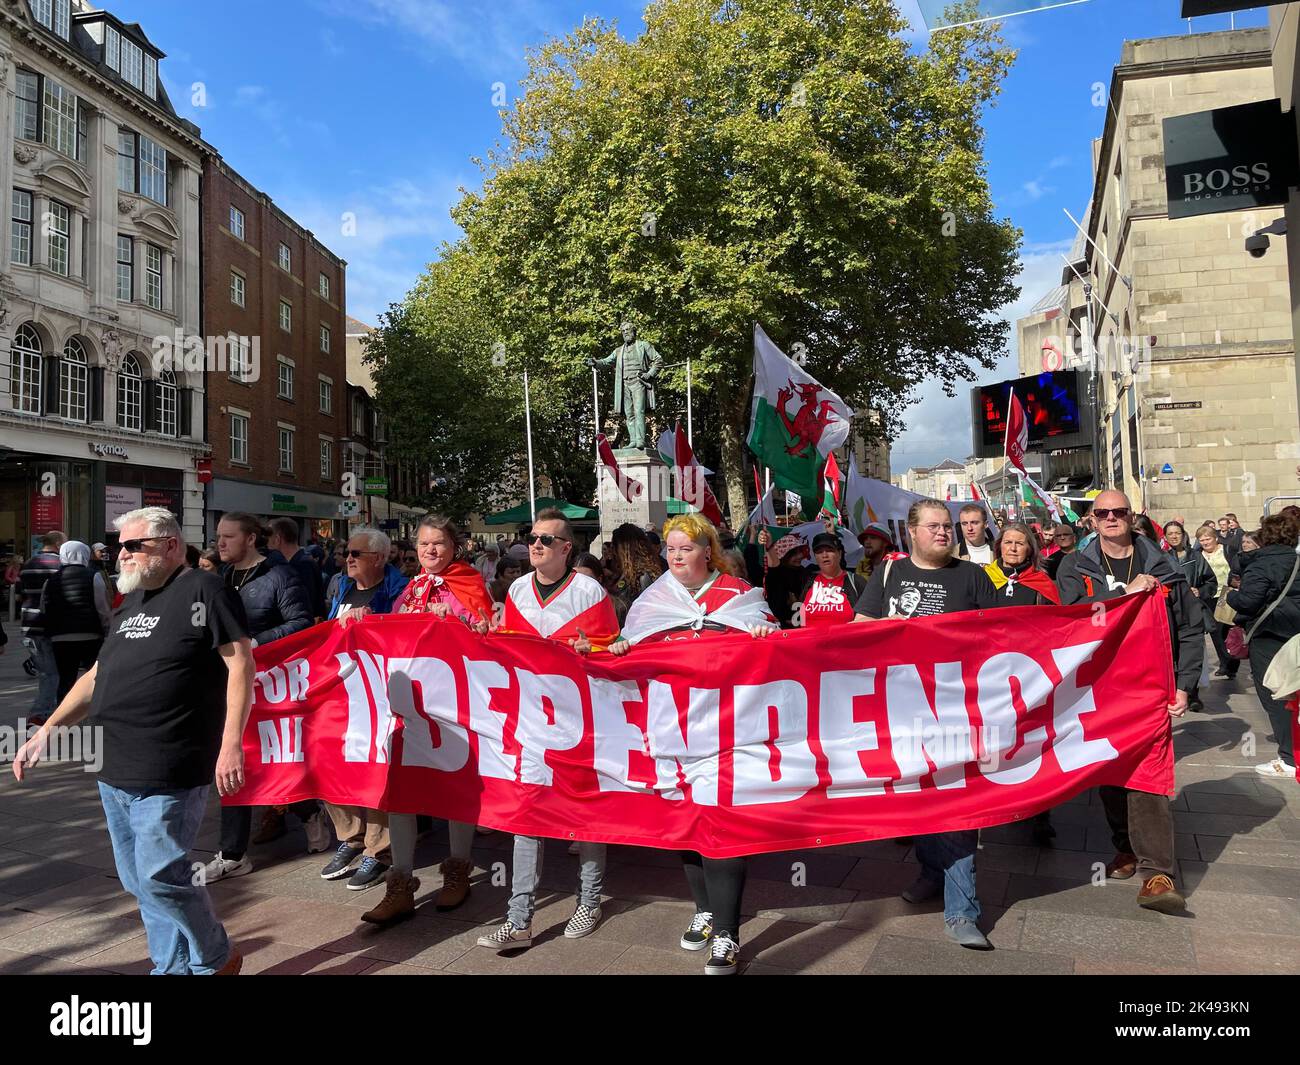 Die Menschen nehmen an einem marsch Teil, der die Unabhängigkeit Waliss im Zentrum von Cardiff, Wales, fordert. Bilddatum: Samstag, 1. Oktober 2022. Stockfoto